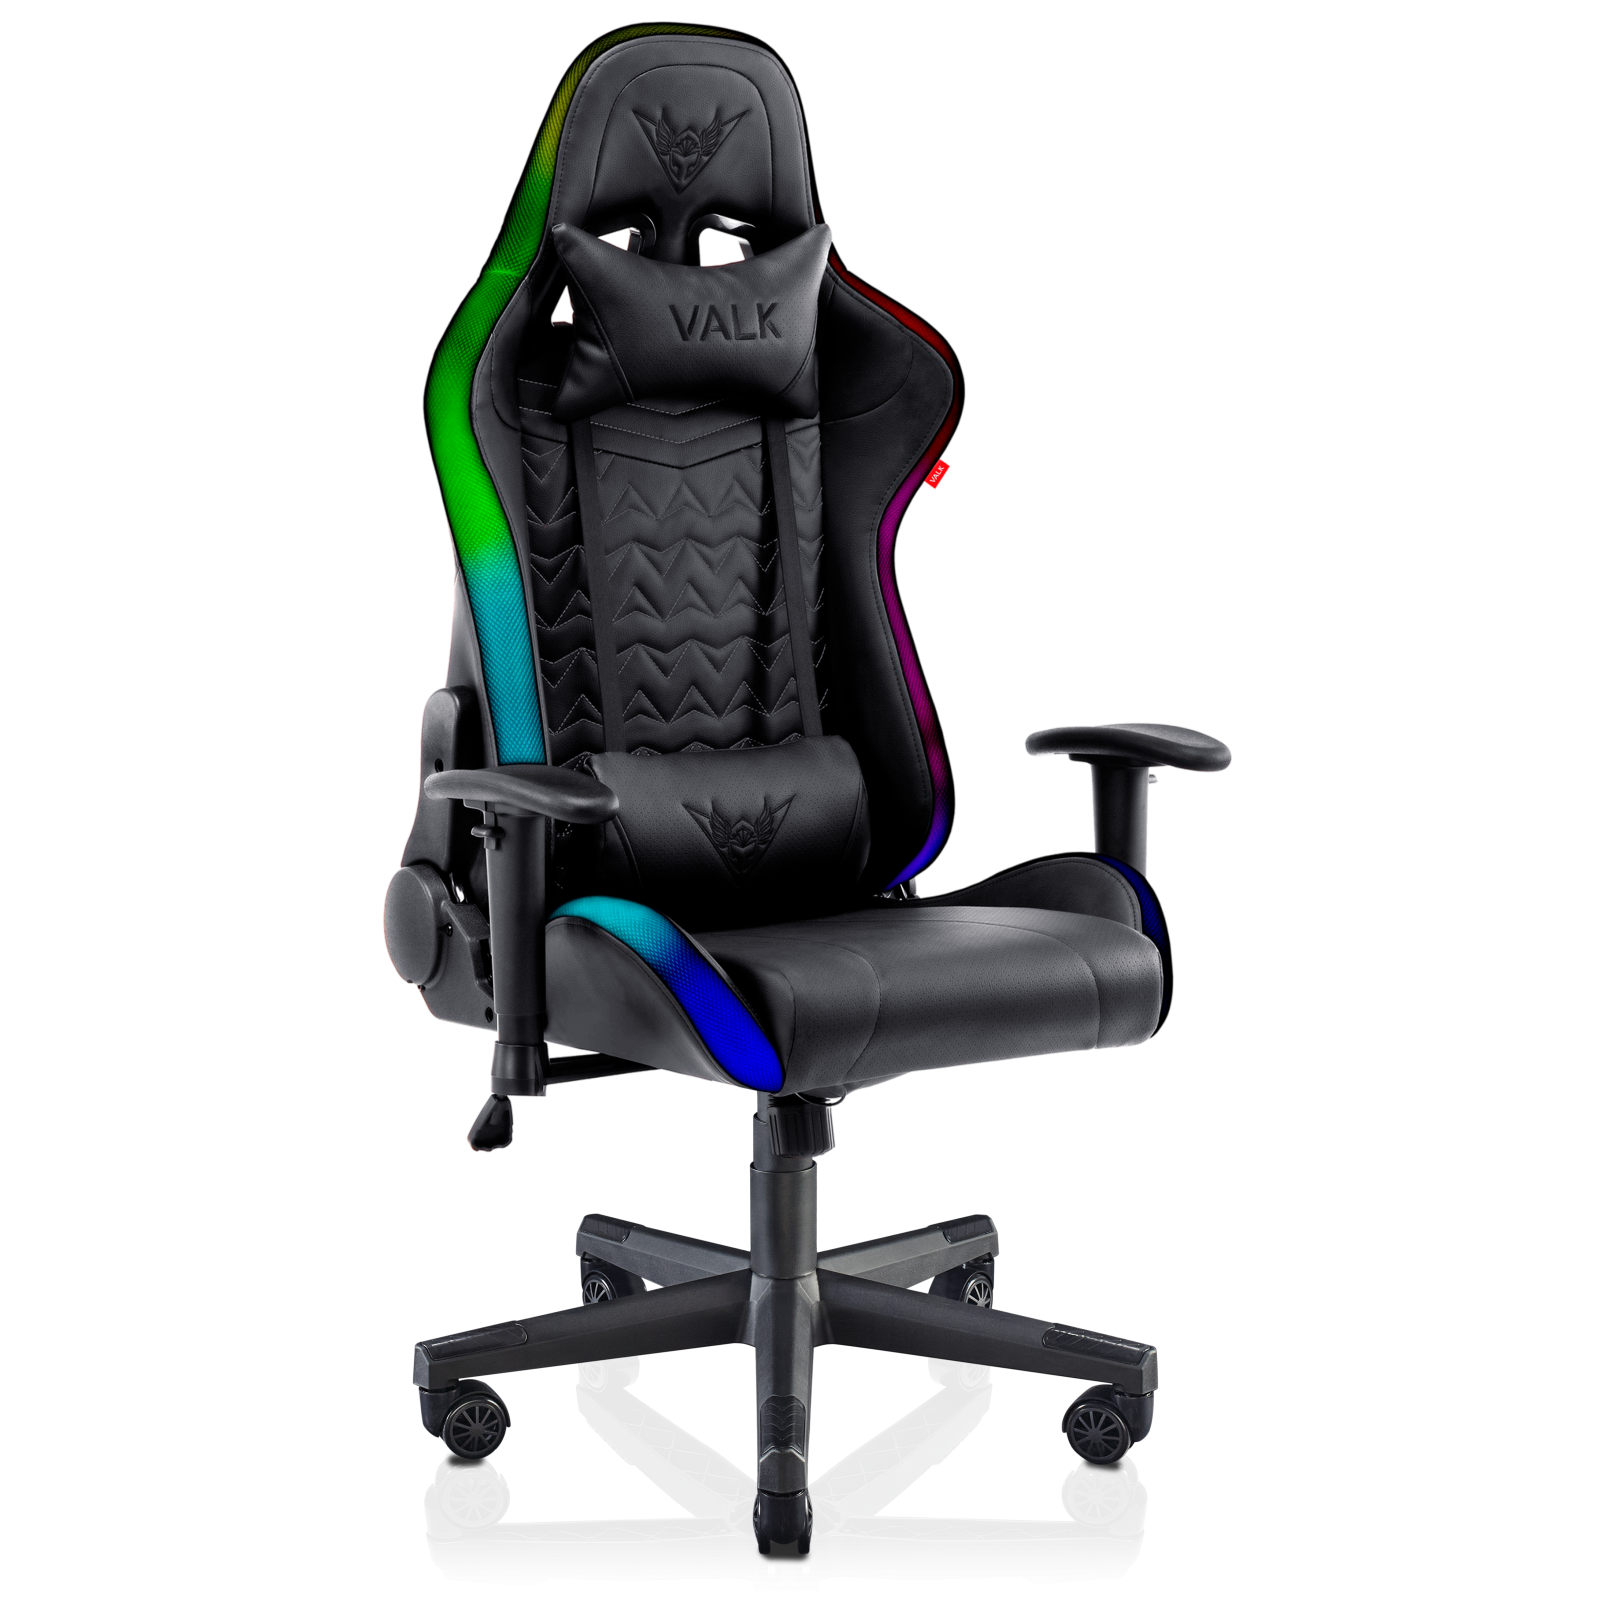 9 sillas de oficina para los que no les gustan las sillas de